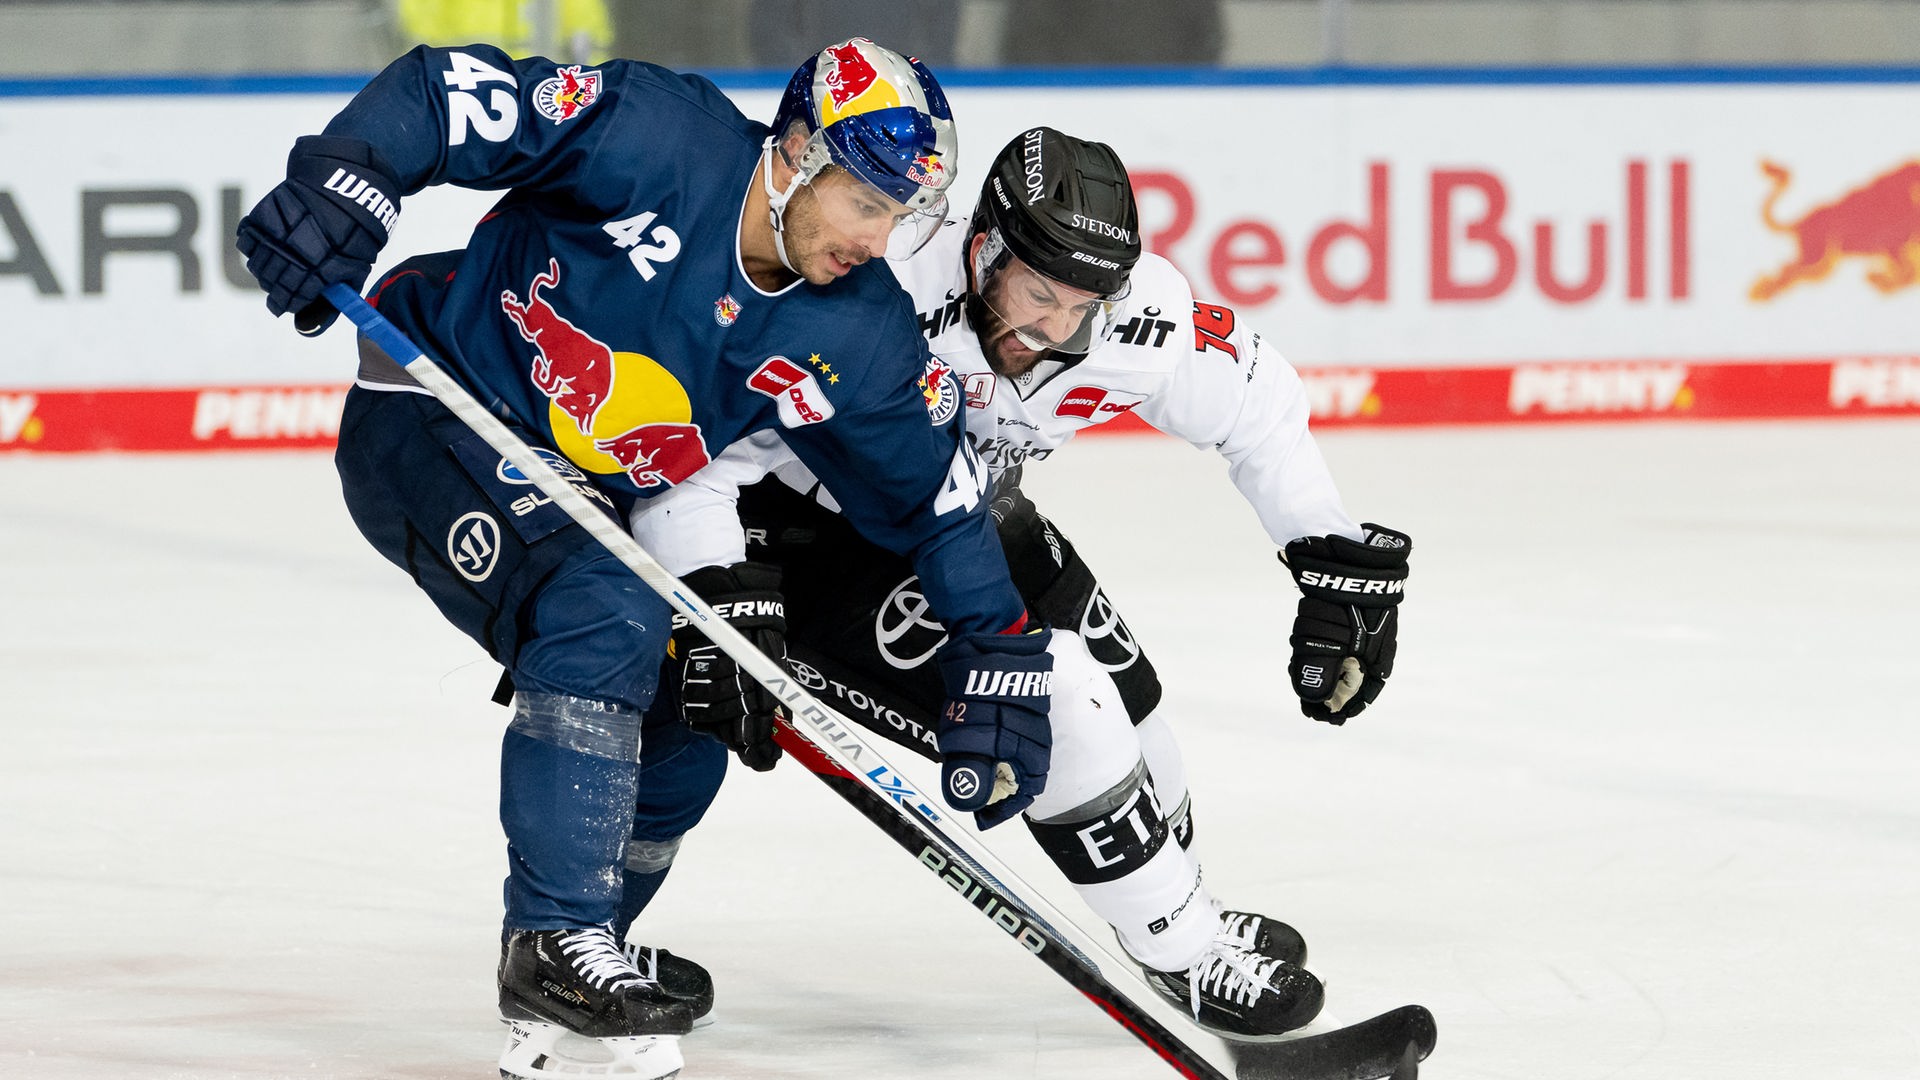 Eishockey, DELMünchens Serie hält - KEC verliert Neun-Tore-Spiel - Eishockey - Sport